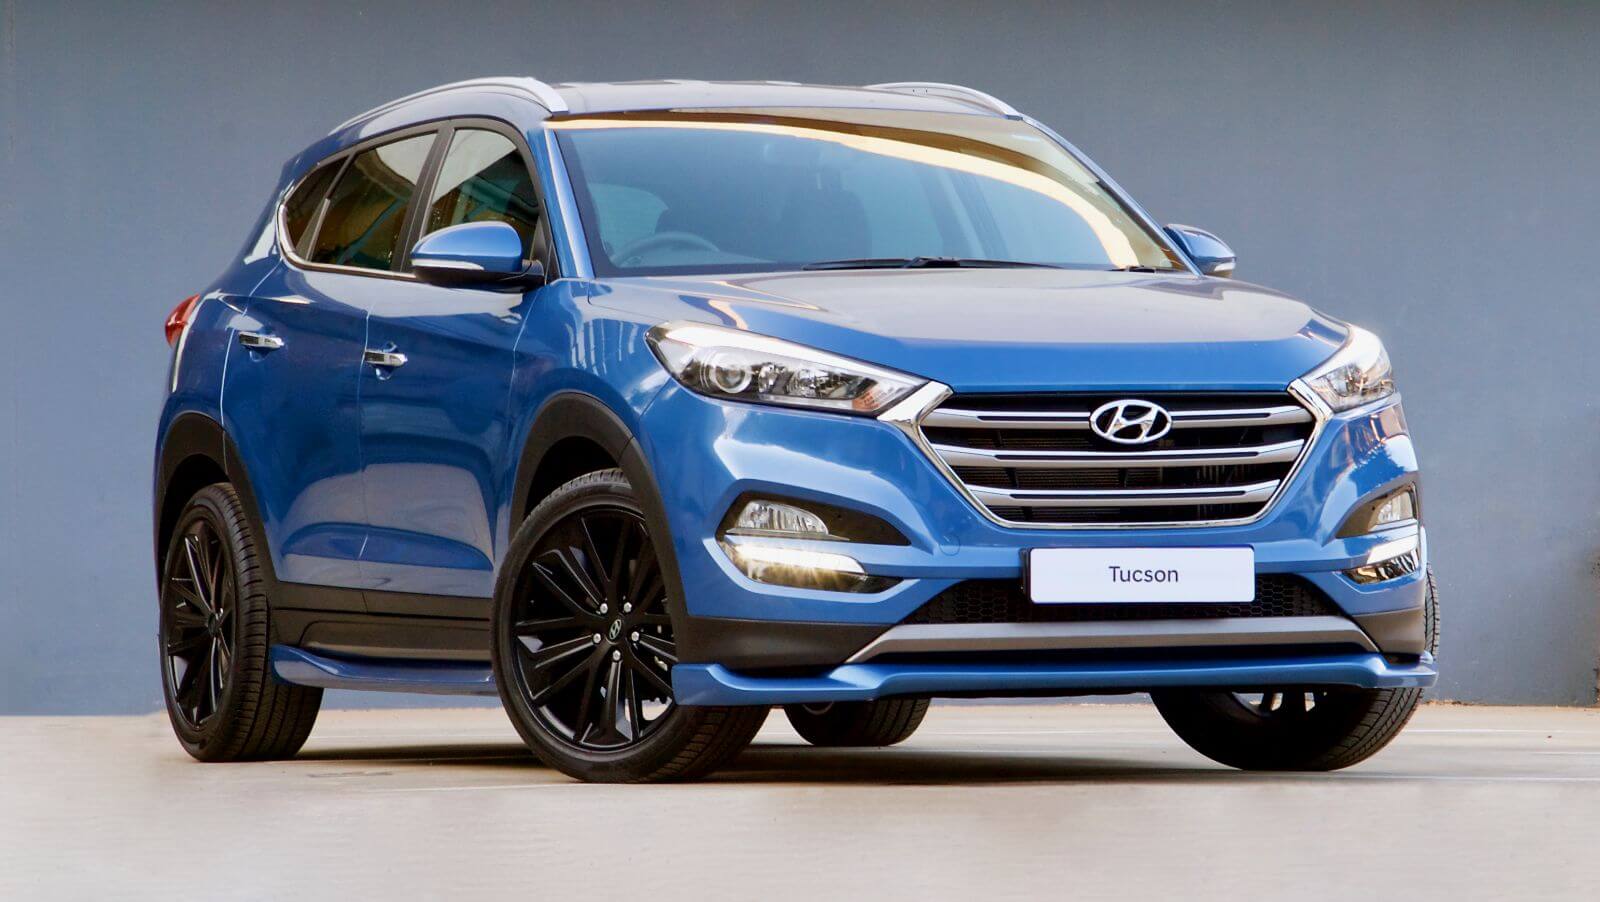 2021 Hyundai Fiyatları Ne Kadar Arttı? Güncel Fiyatlar